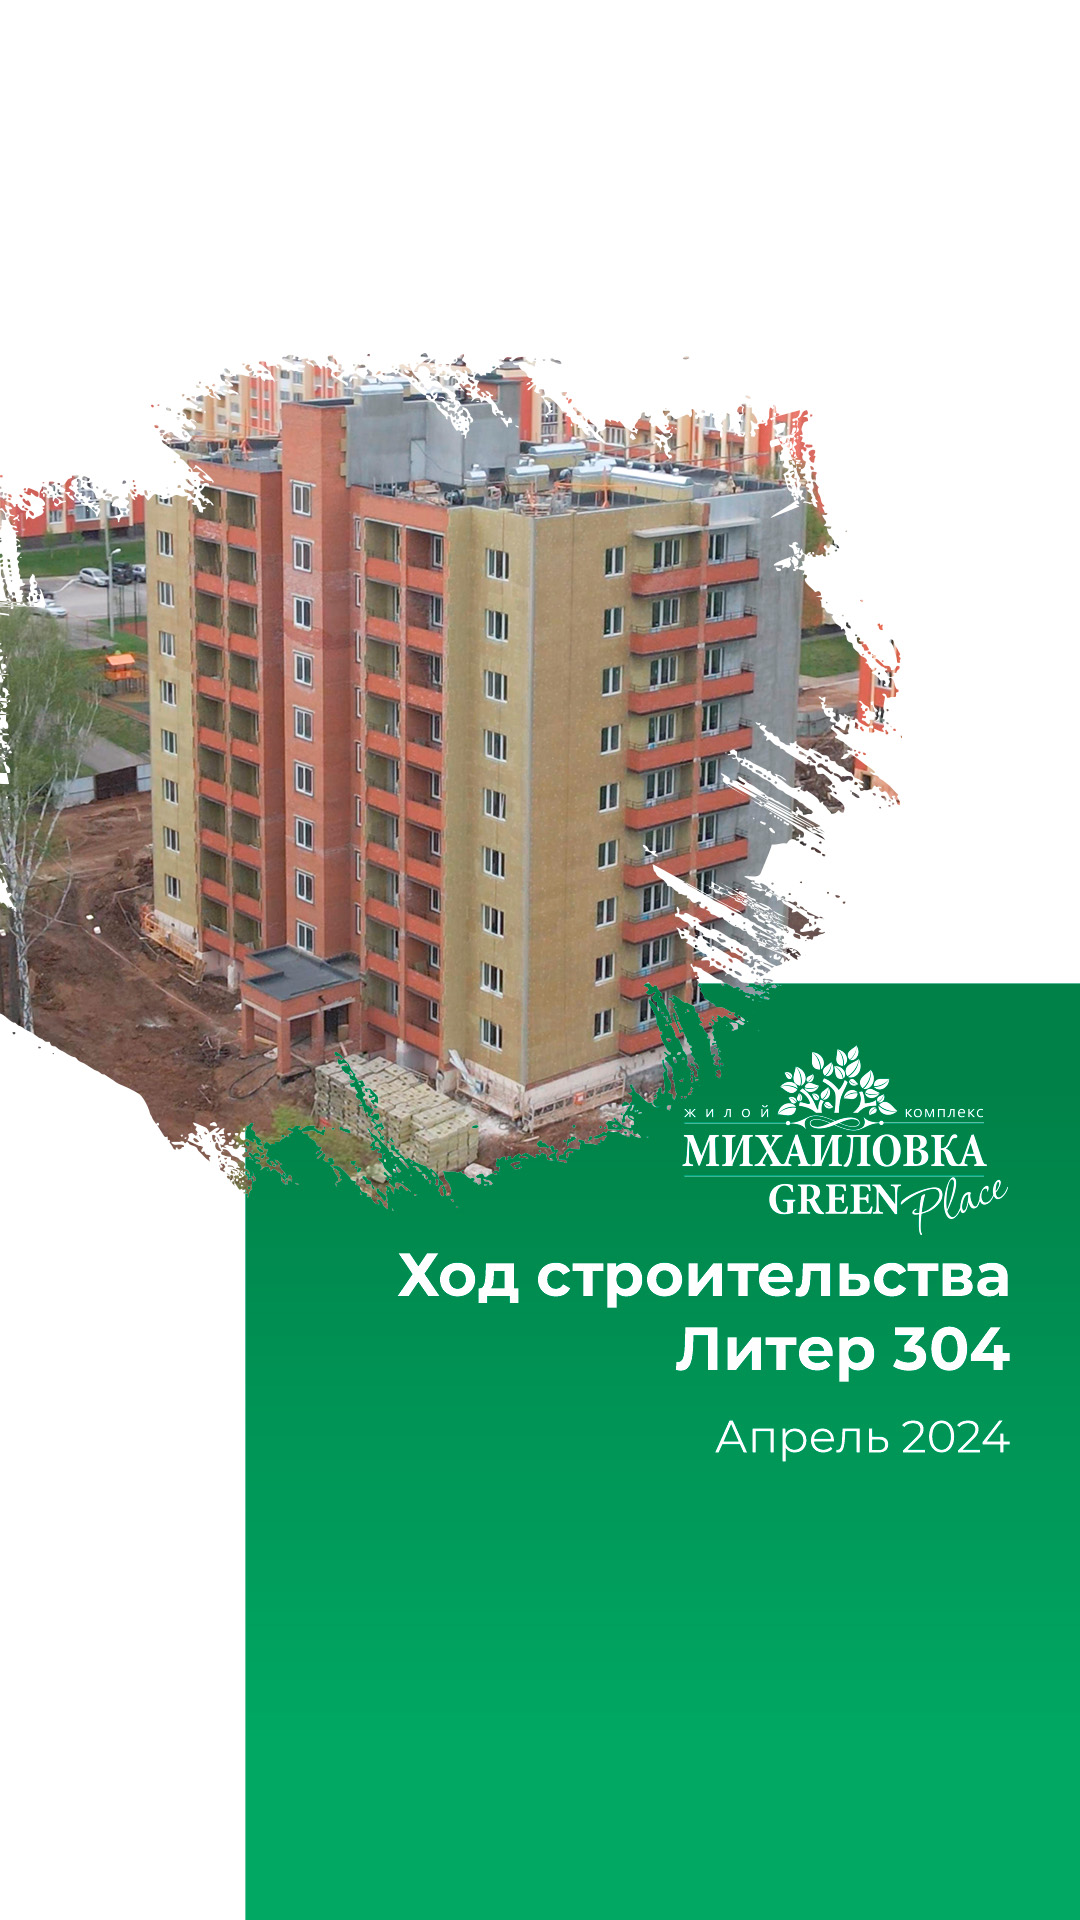 Отчет о ходе строительства за апрель в ЖК "Михайловка Green Place". Литер 304